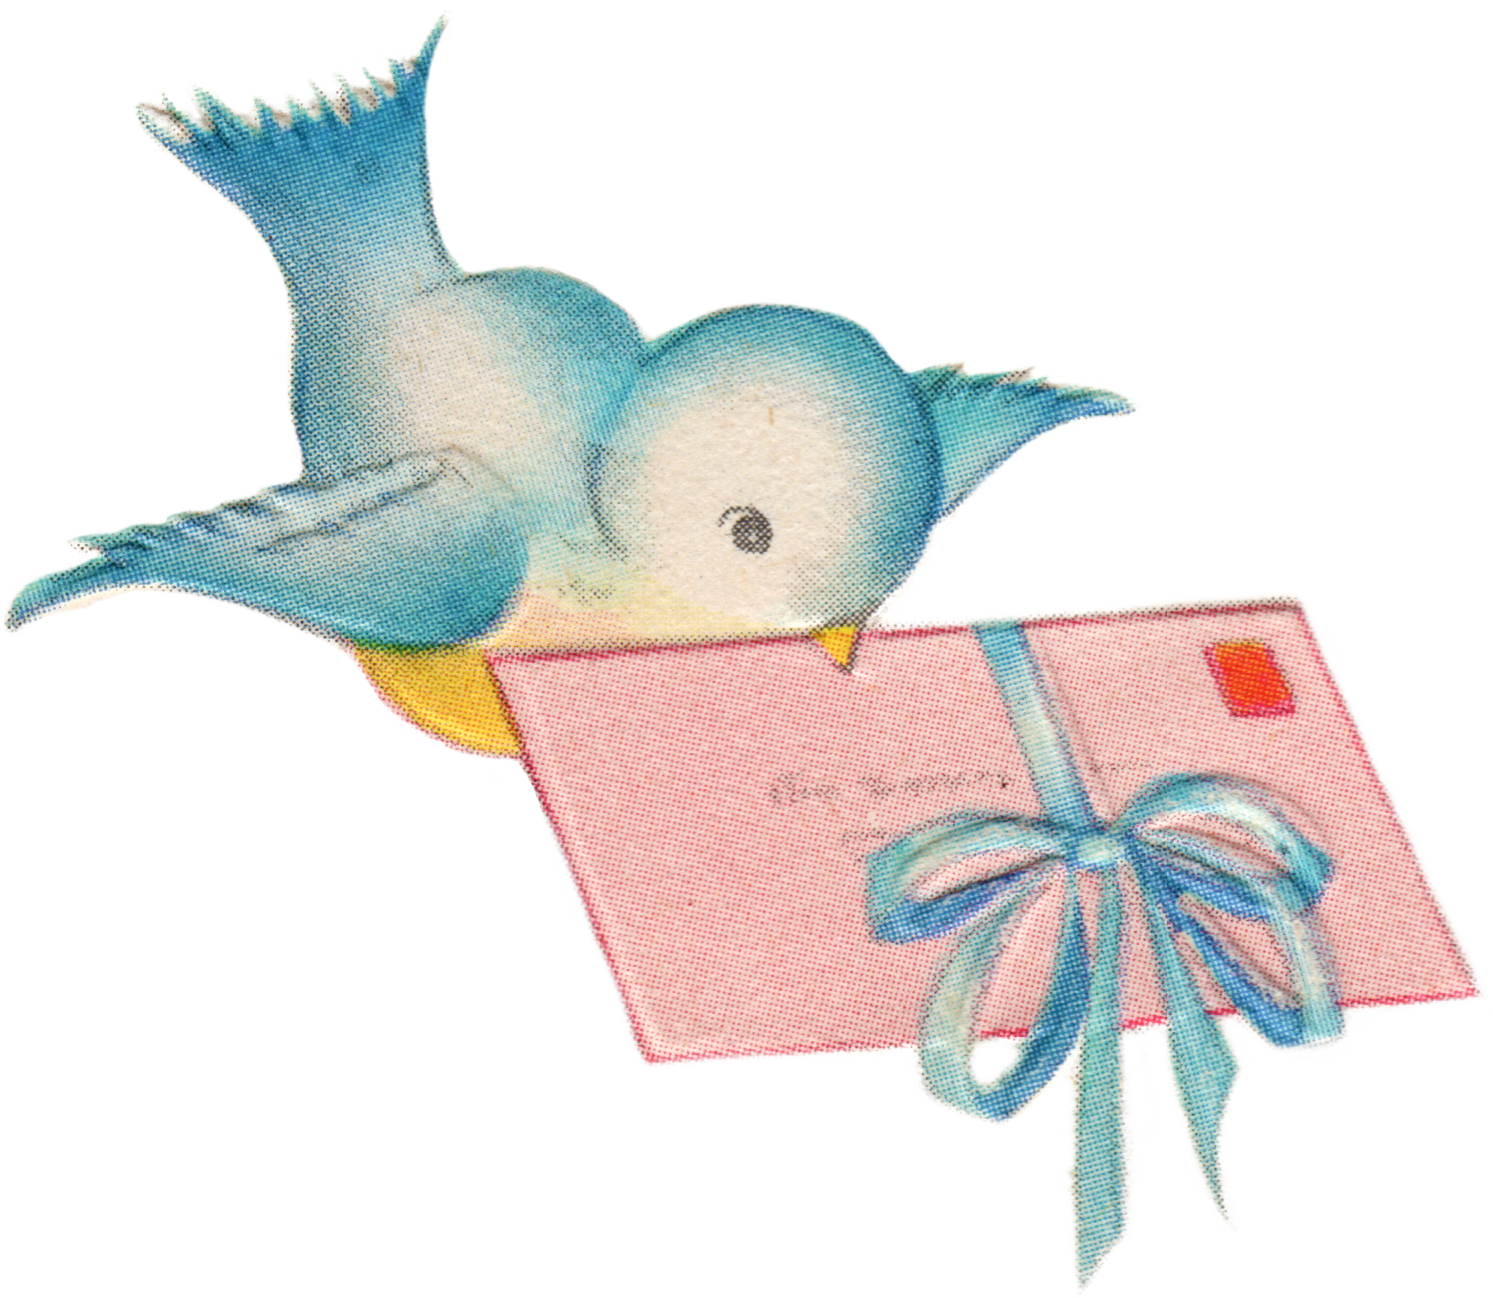 clipart bird mail